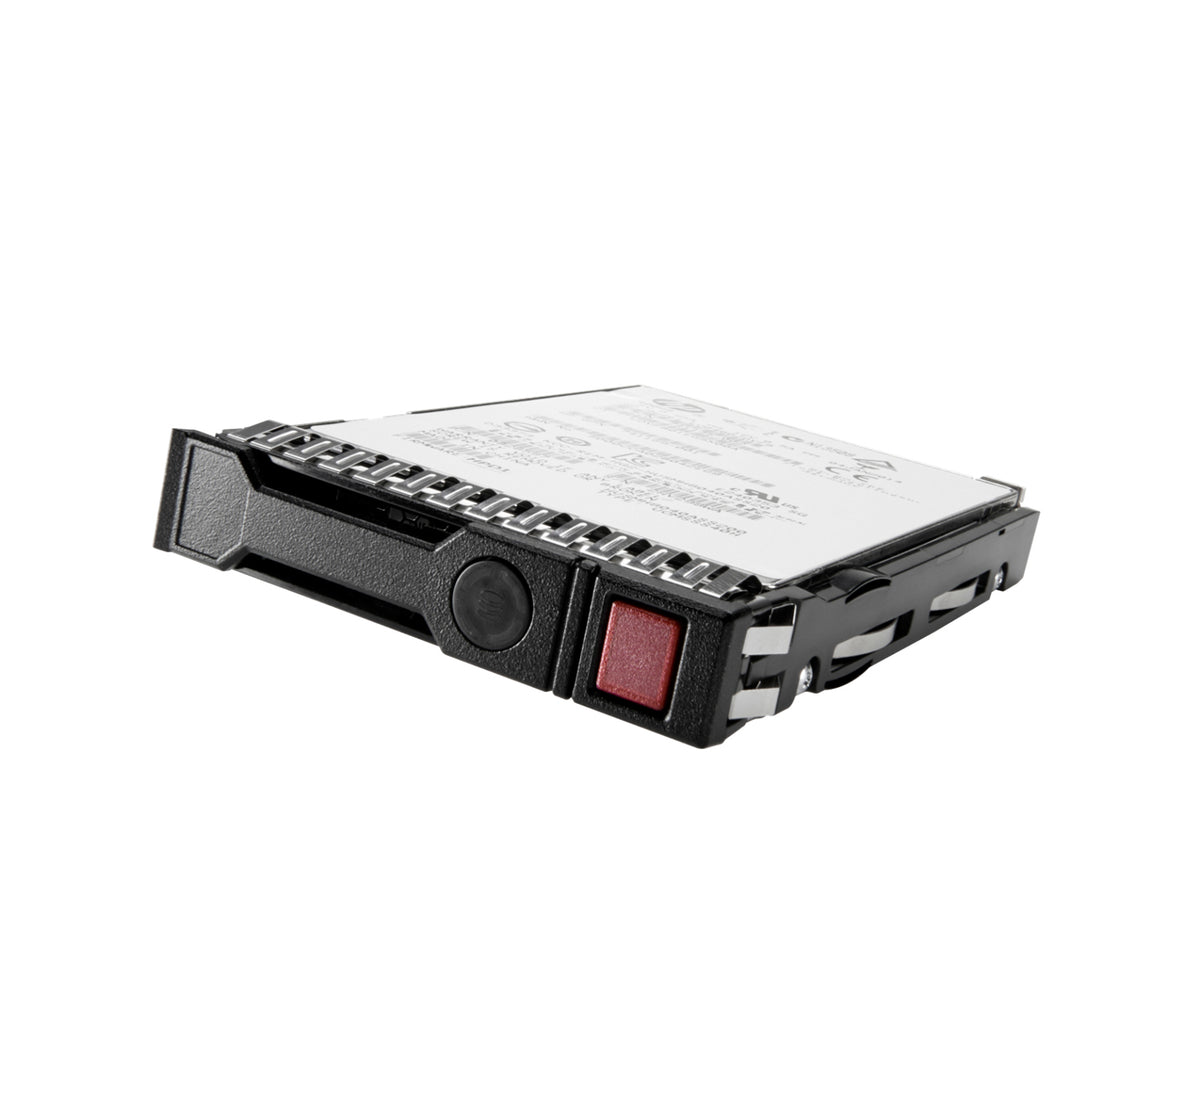 Q2S06A - Hewlett Packard Enterprise - internal hard drive 3.5" 12000 GB Serial ATA